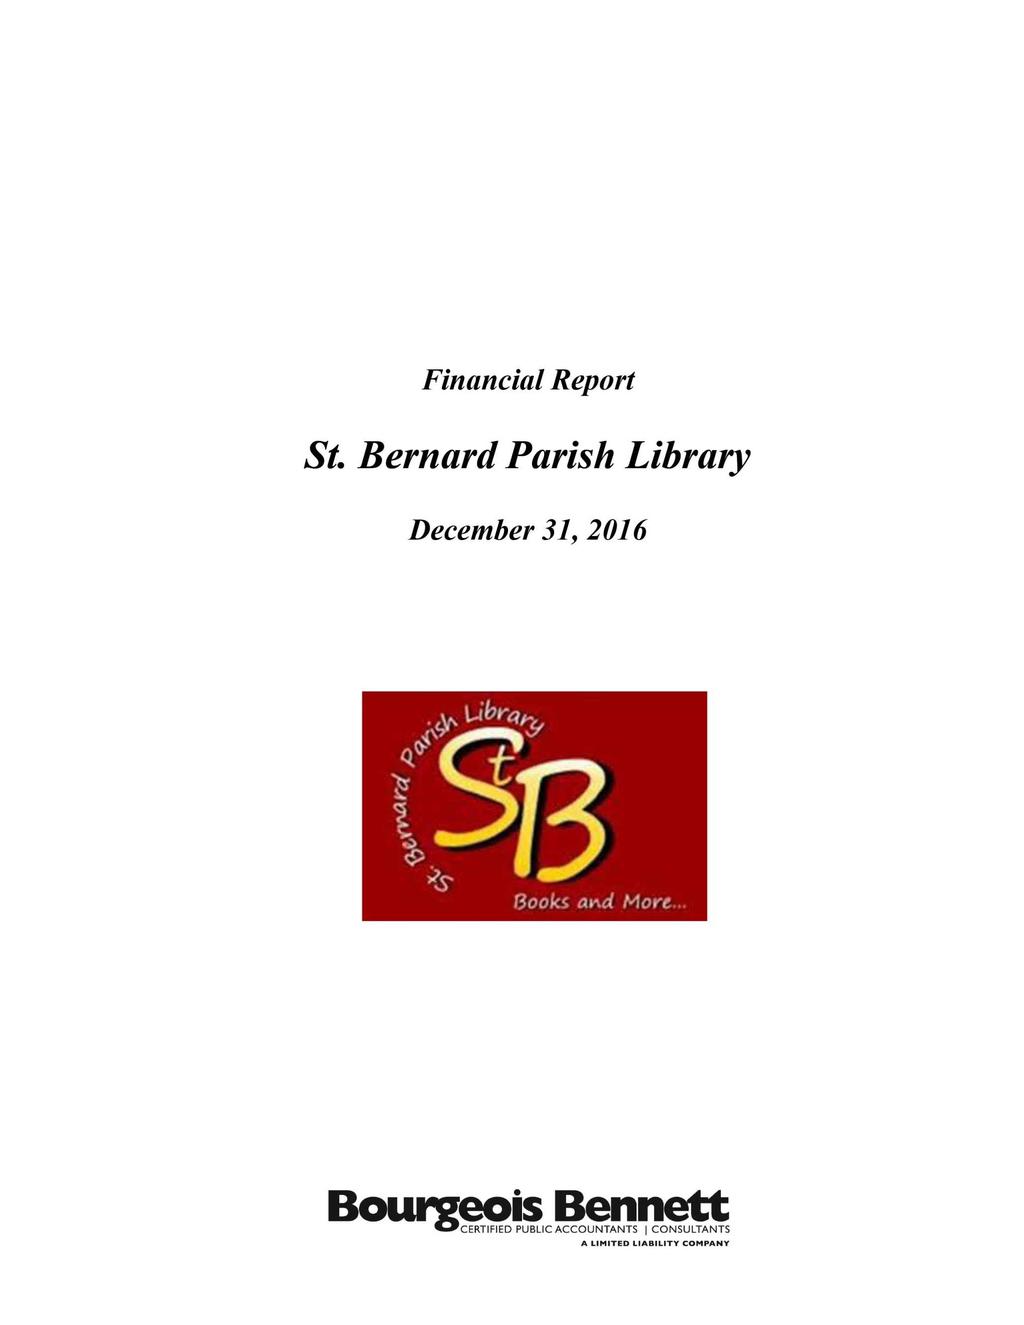 Financial Report St. Bernard Parish Library December 31, 2016 Books. a \d More.